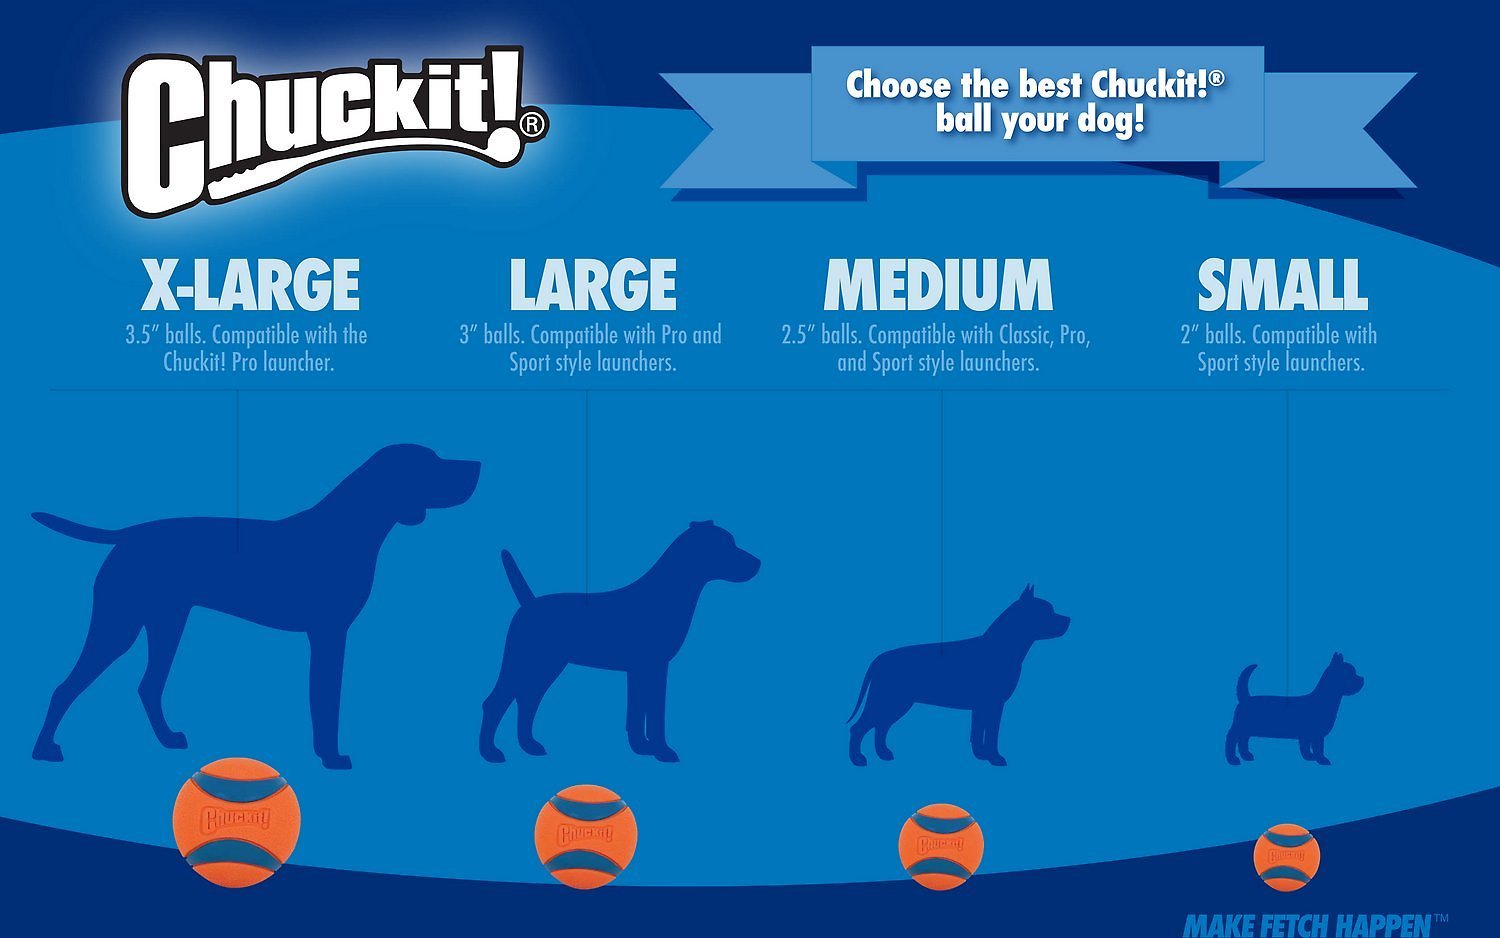 Chuckit! Fetch Medley - Seturi de 3 mingi diferite pentru câini - zoom